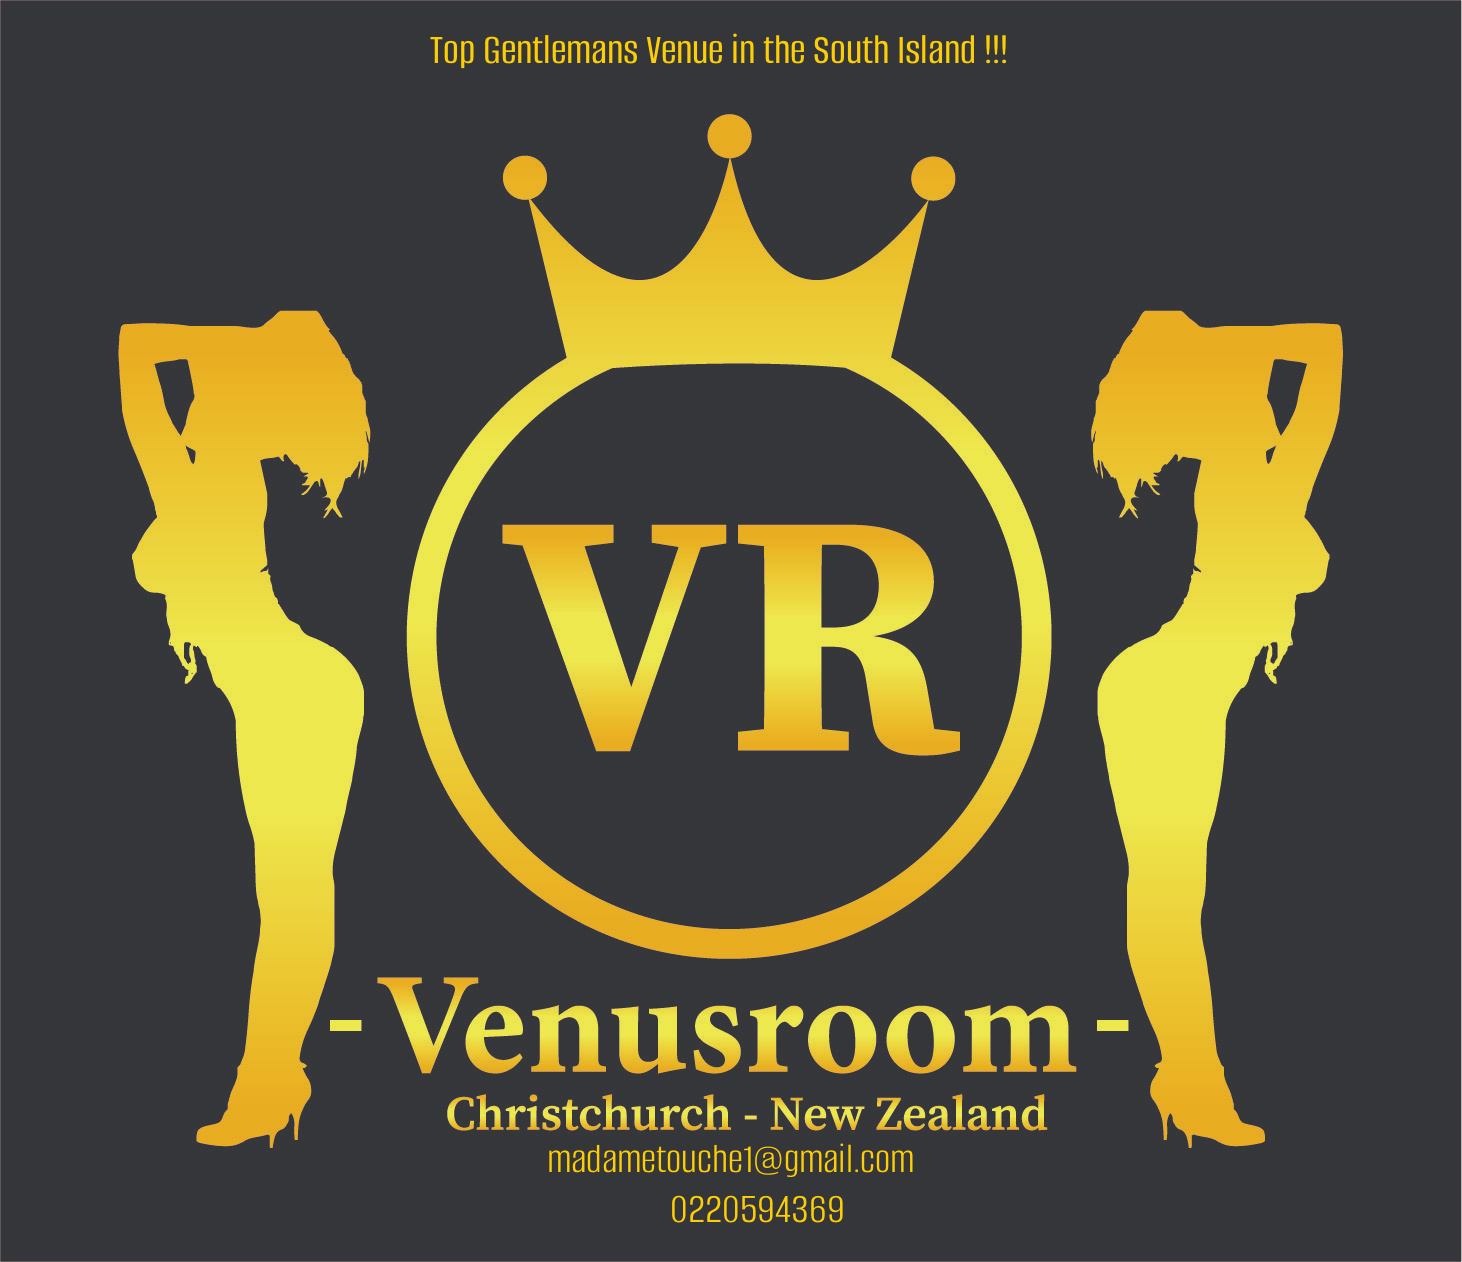 Venusroom